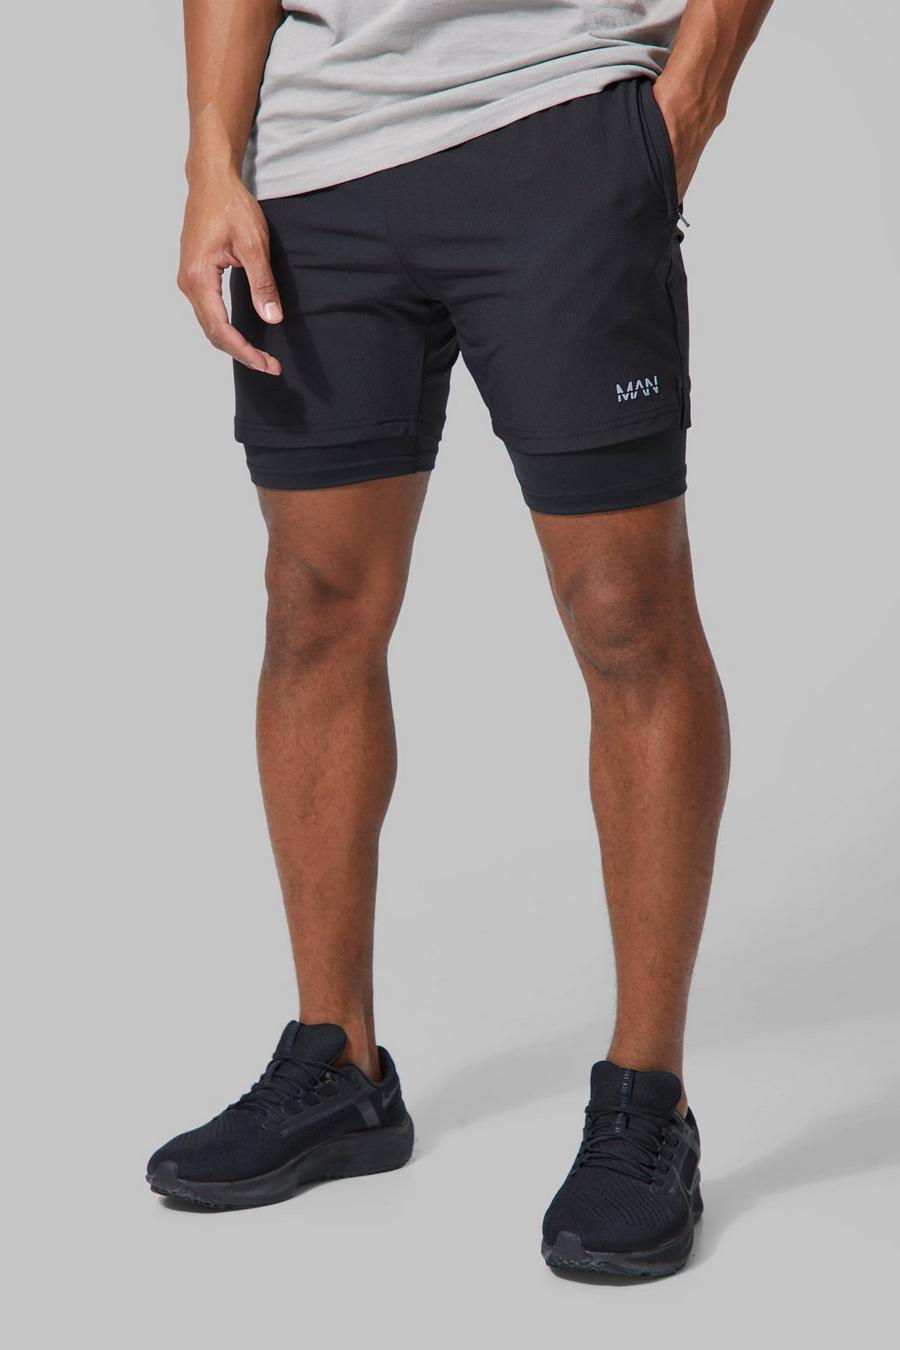 Man Active 2-in-1 Shorts, Black schwarz